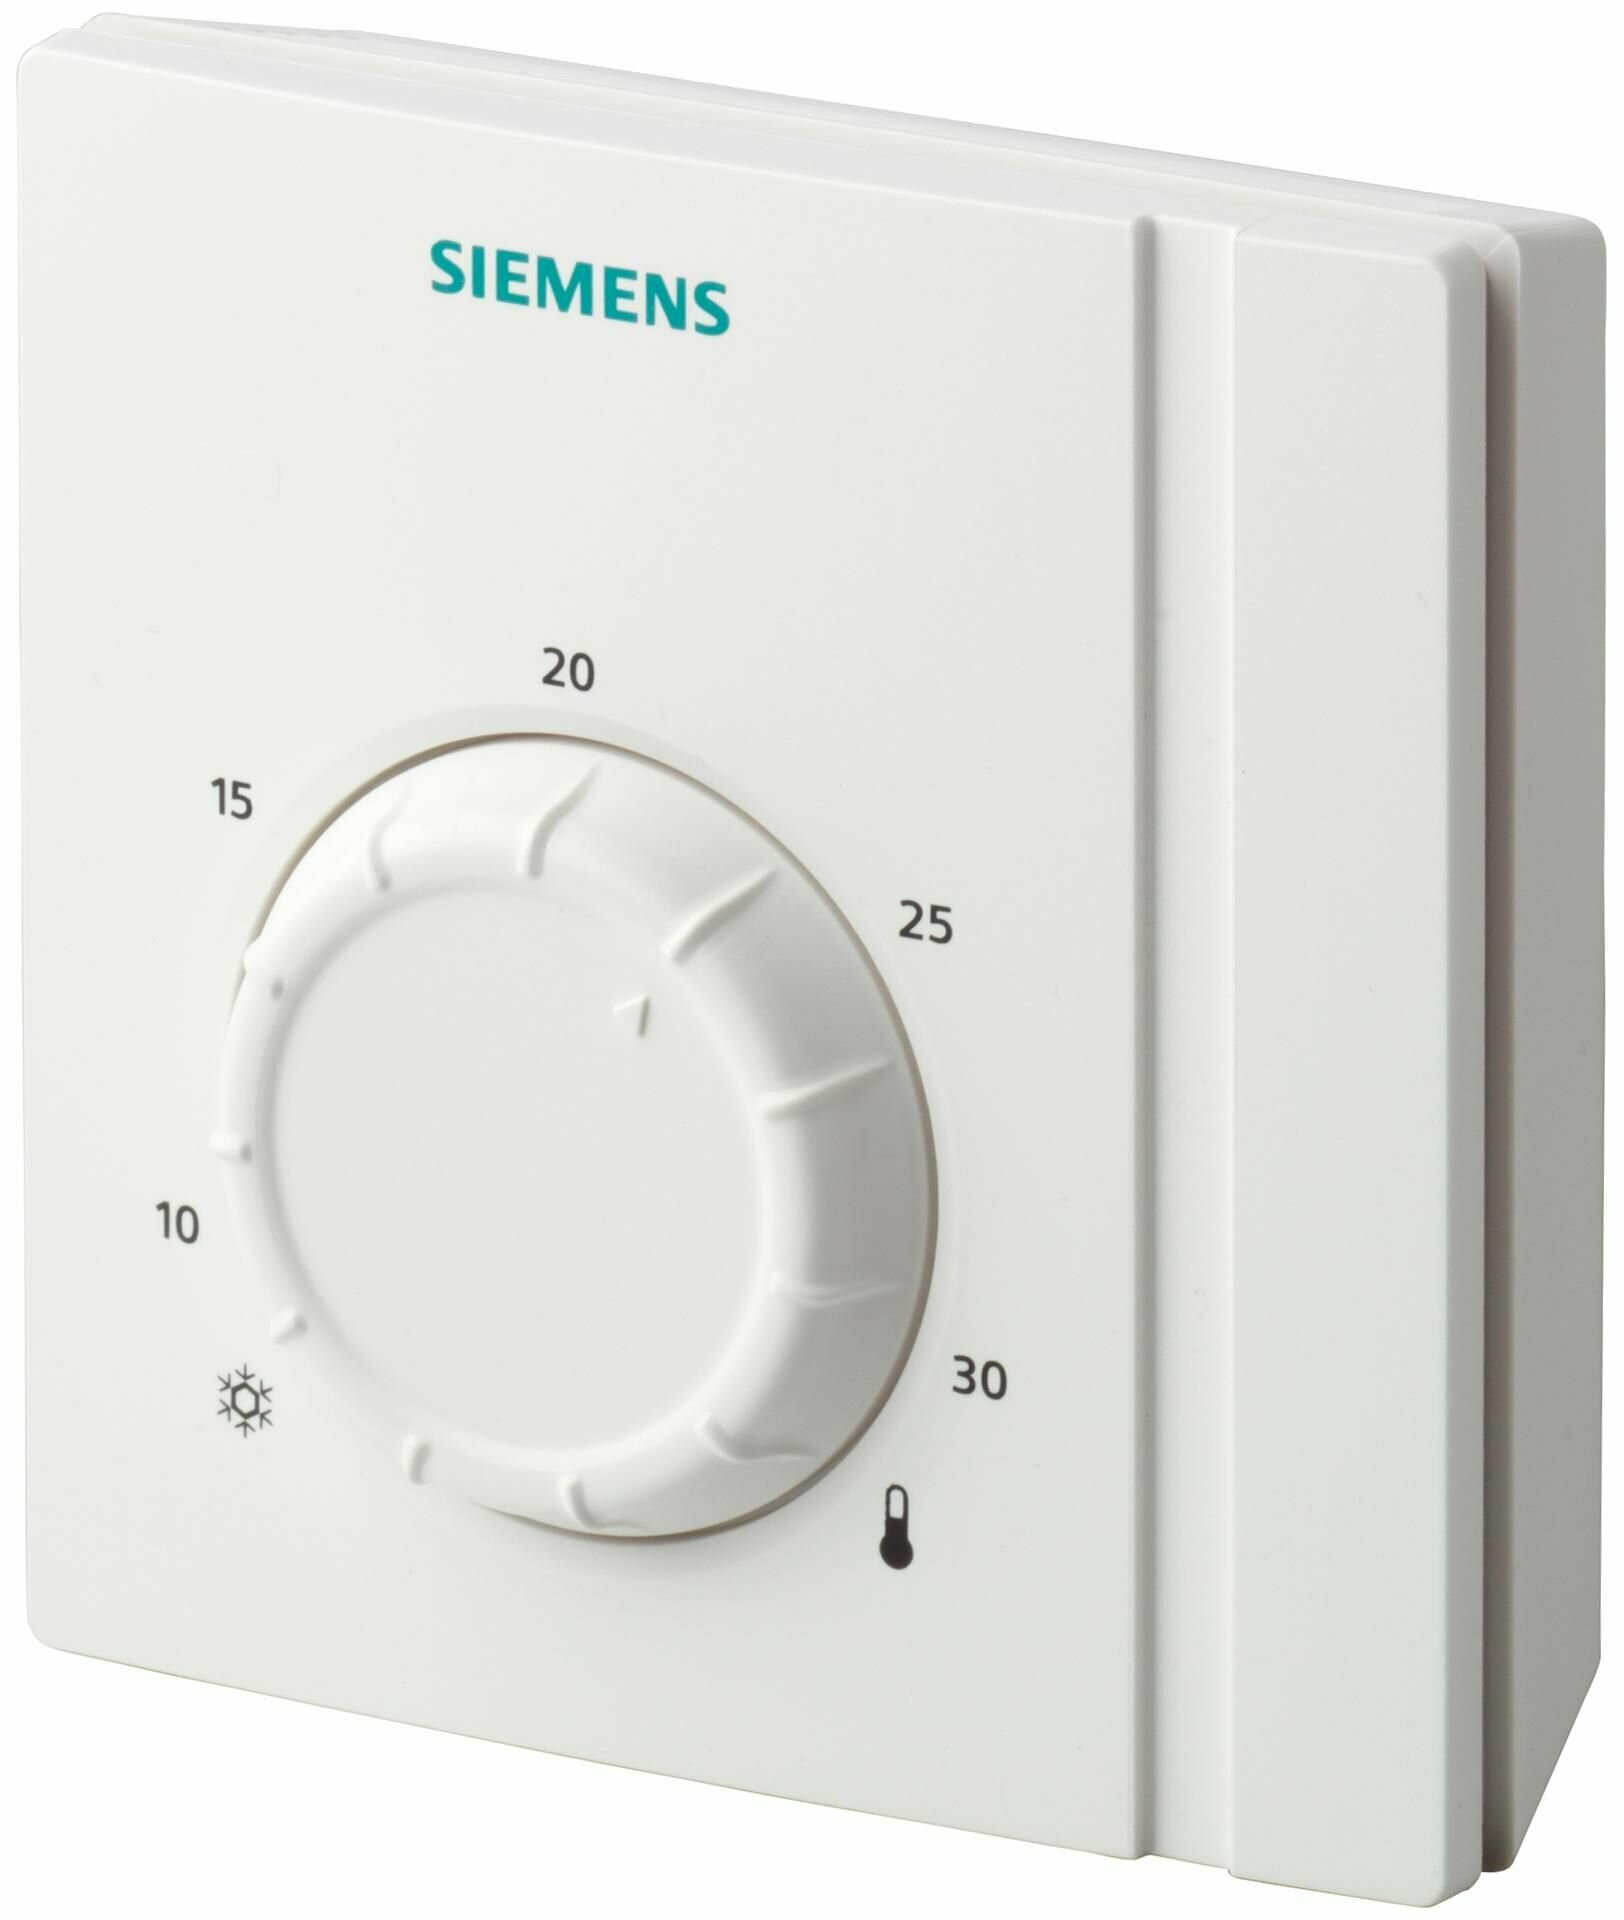 Комнатный термостат RAA21 производства Siemens накладного монтажа с задатчиком температуры, без расписания, для радиаторов и управления котлом